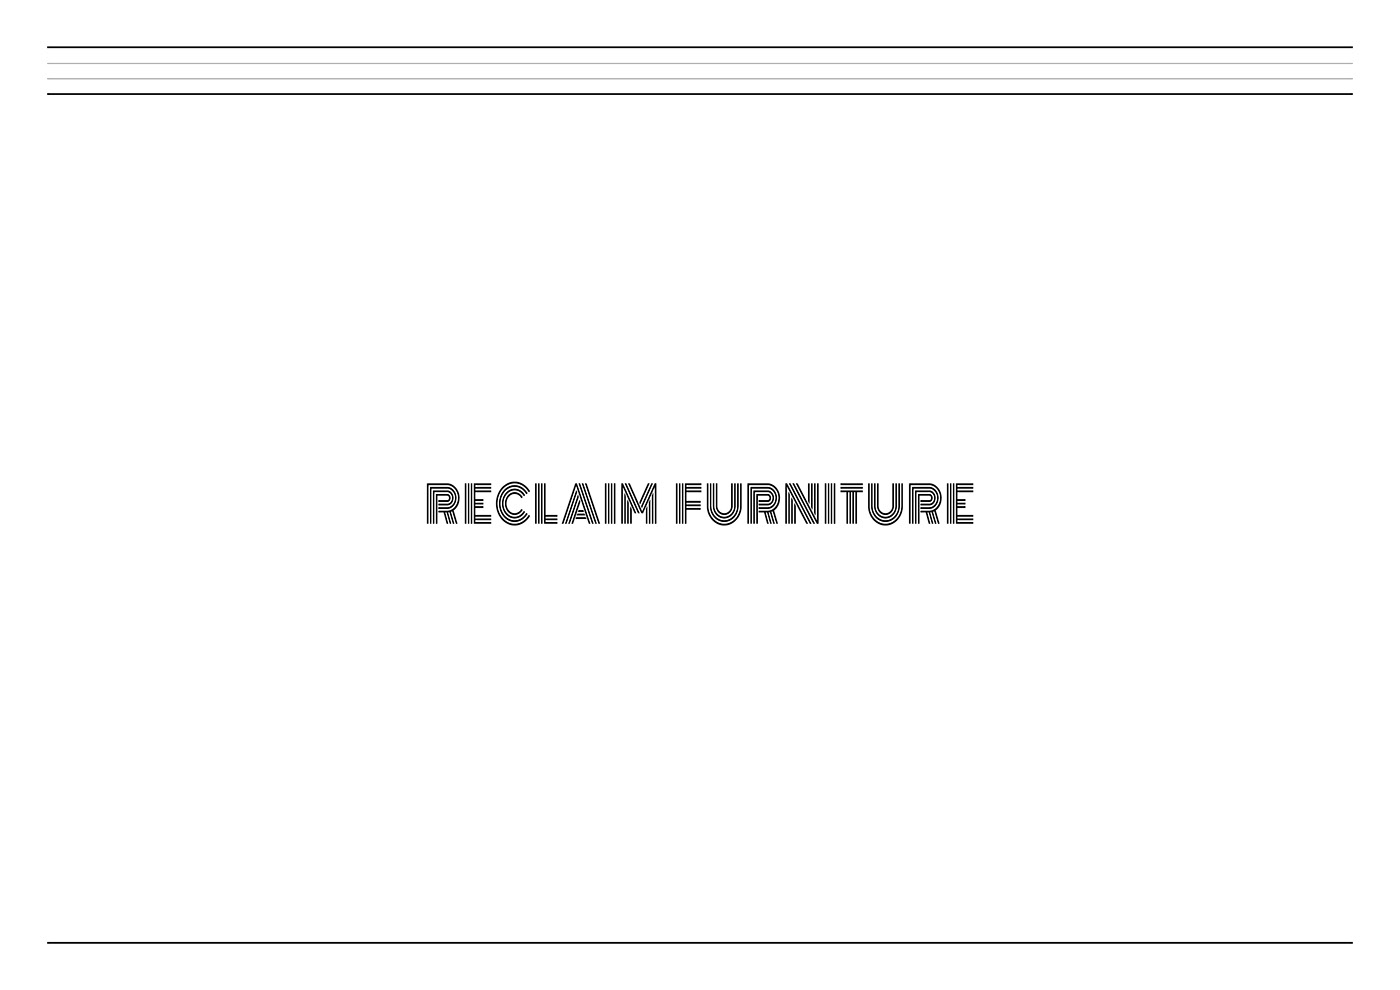 furnituredesign